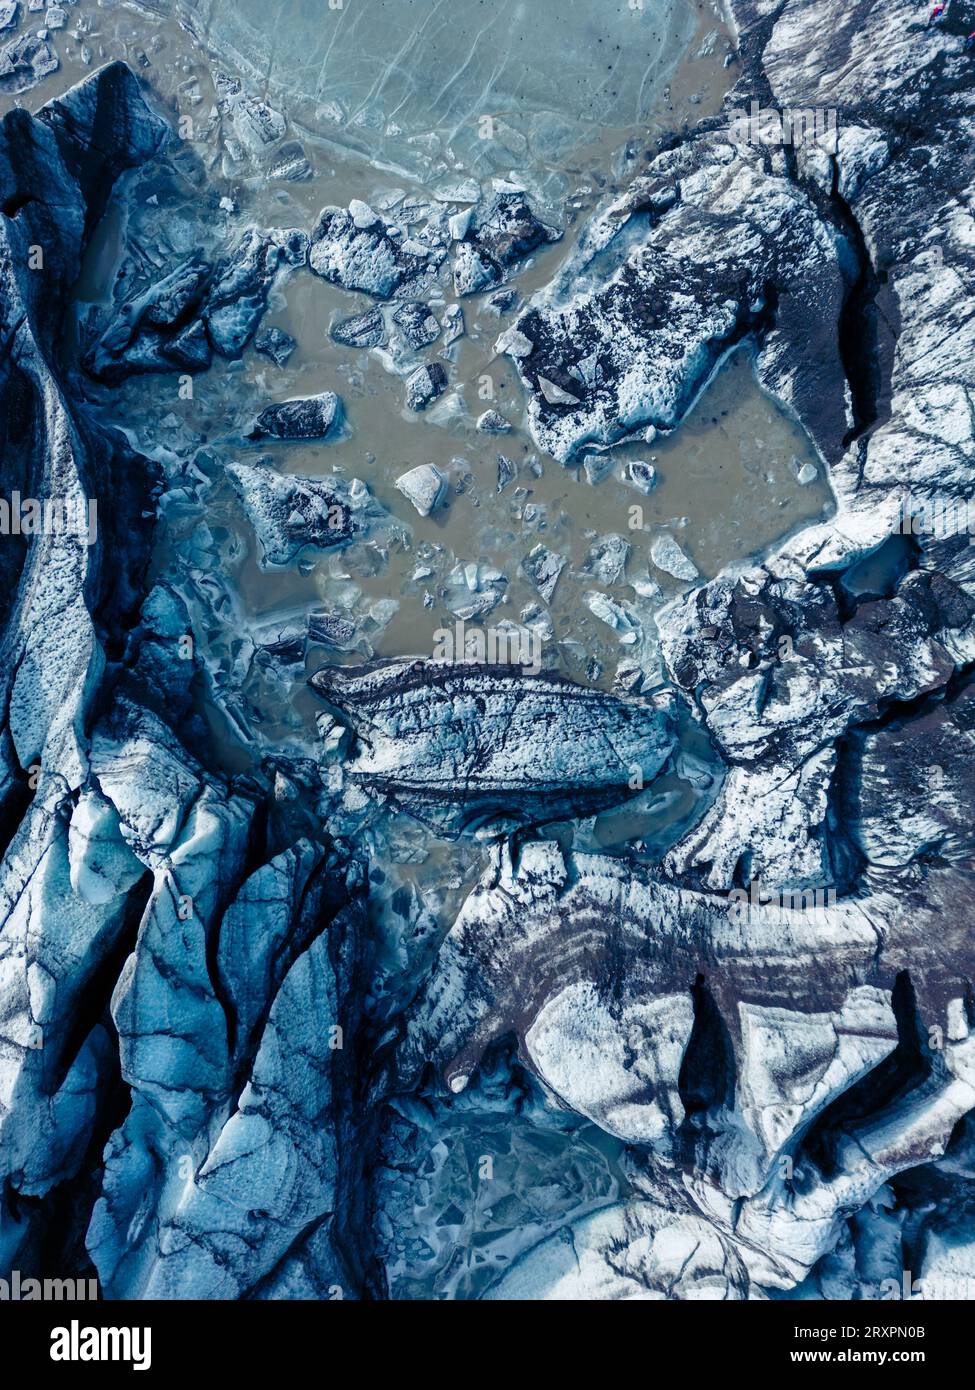 Colpo di drone di rocce glaciali blu sulla massa di ghiaccio vatnajokull in islanda, enormi iceberg si snodano con grotte di ghiaccio che creano un paesaggio naturale. Blocchi ghiacciati mozzafiato all'interno della laguna glaciale. Foto Stock